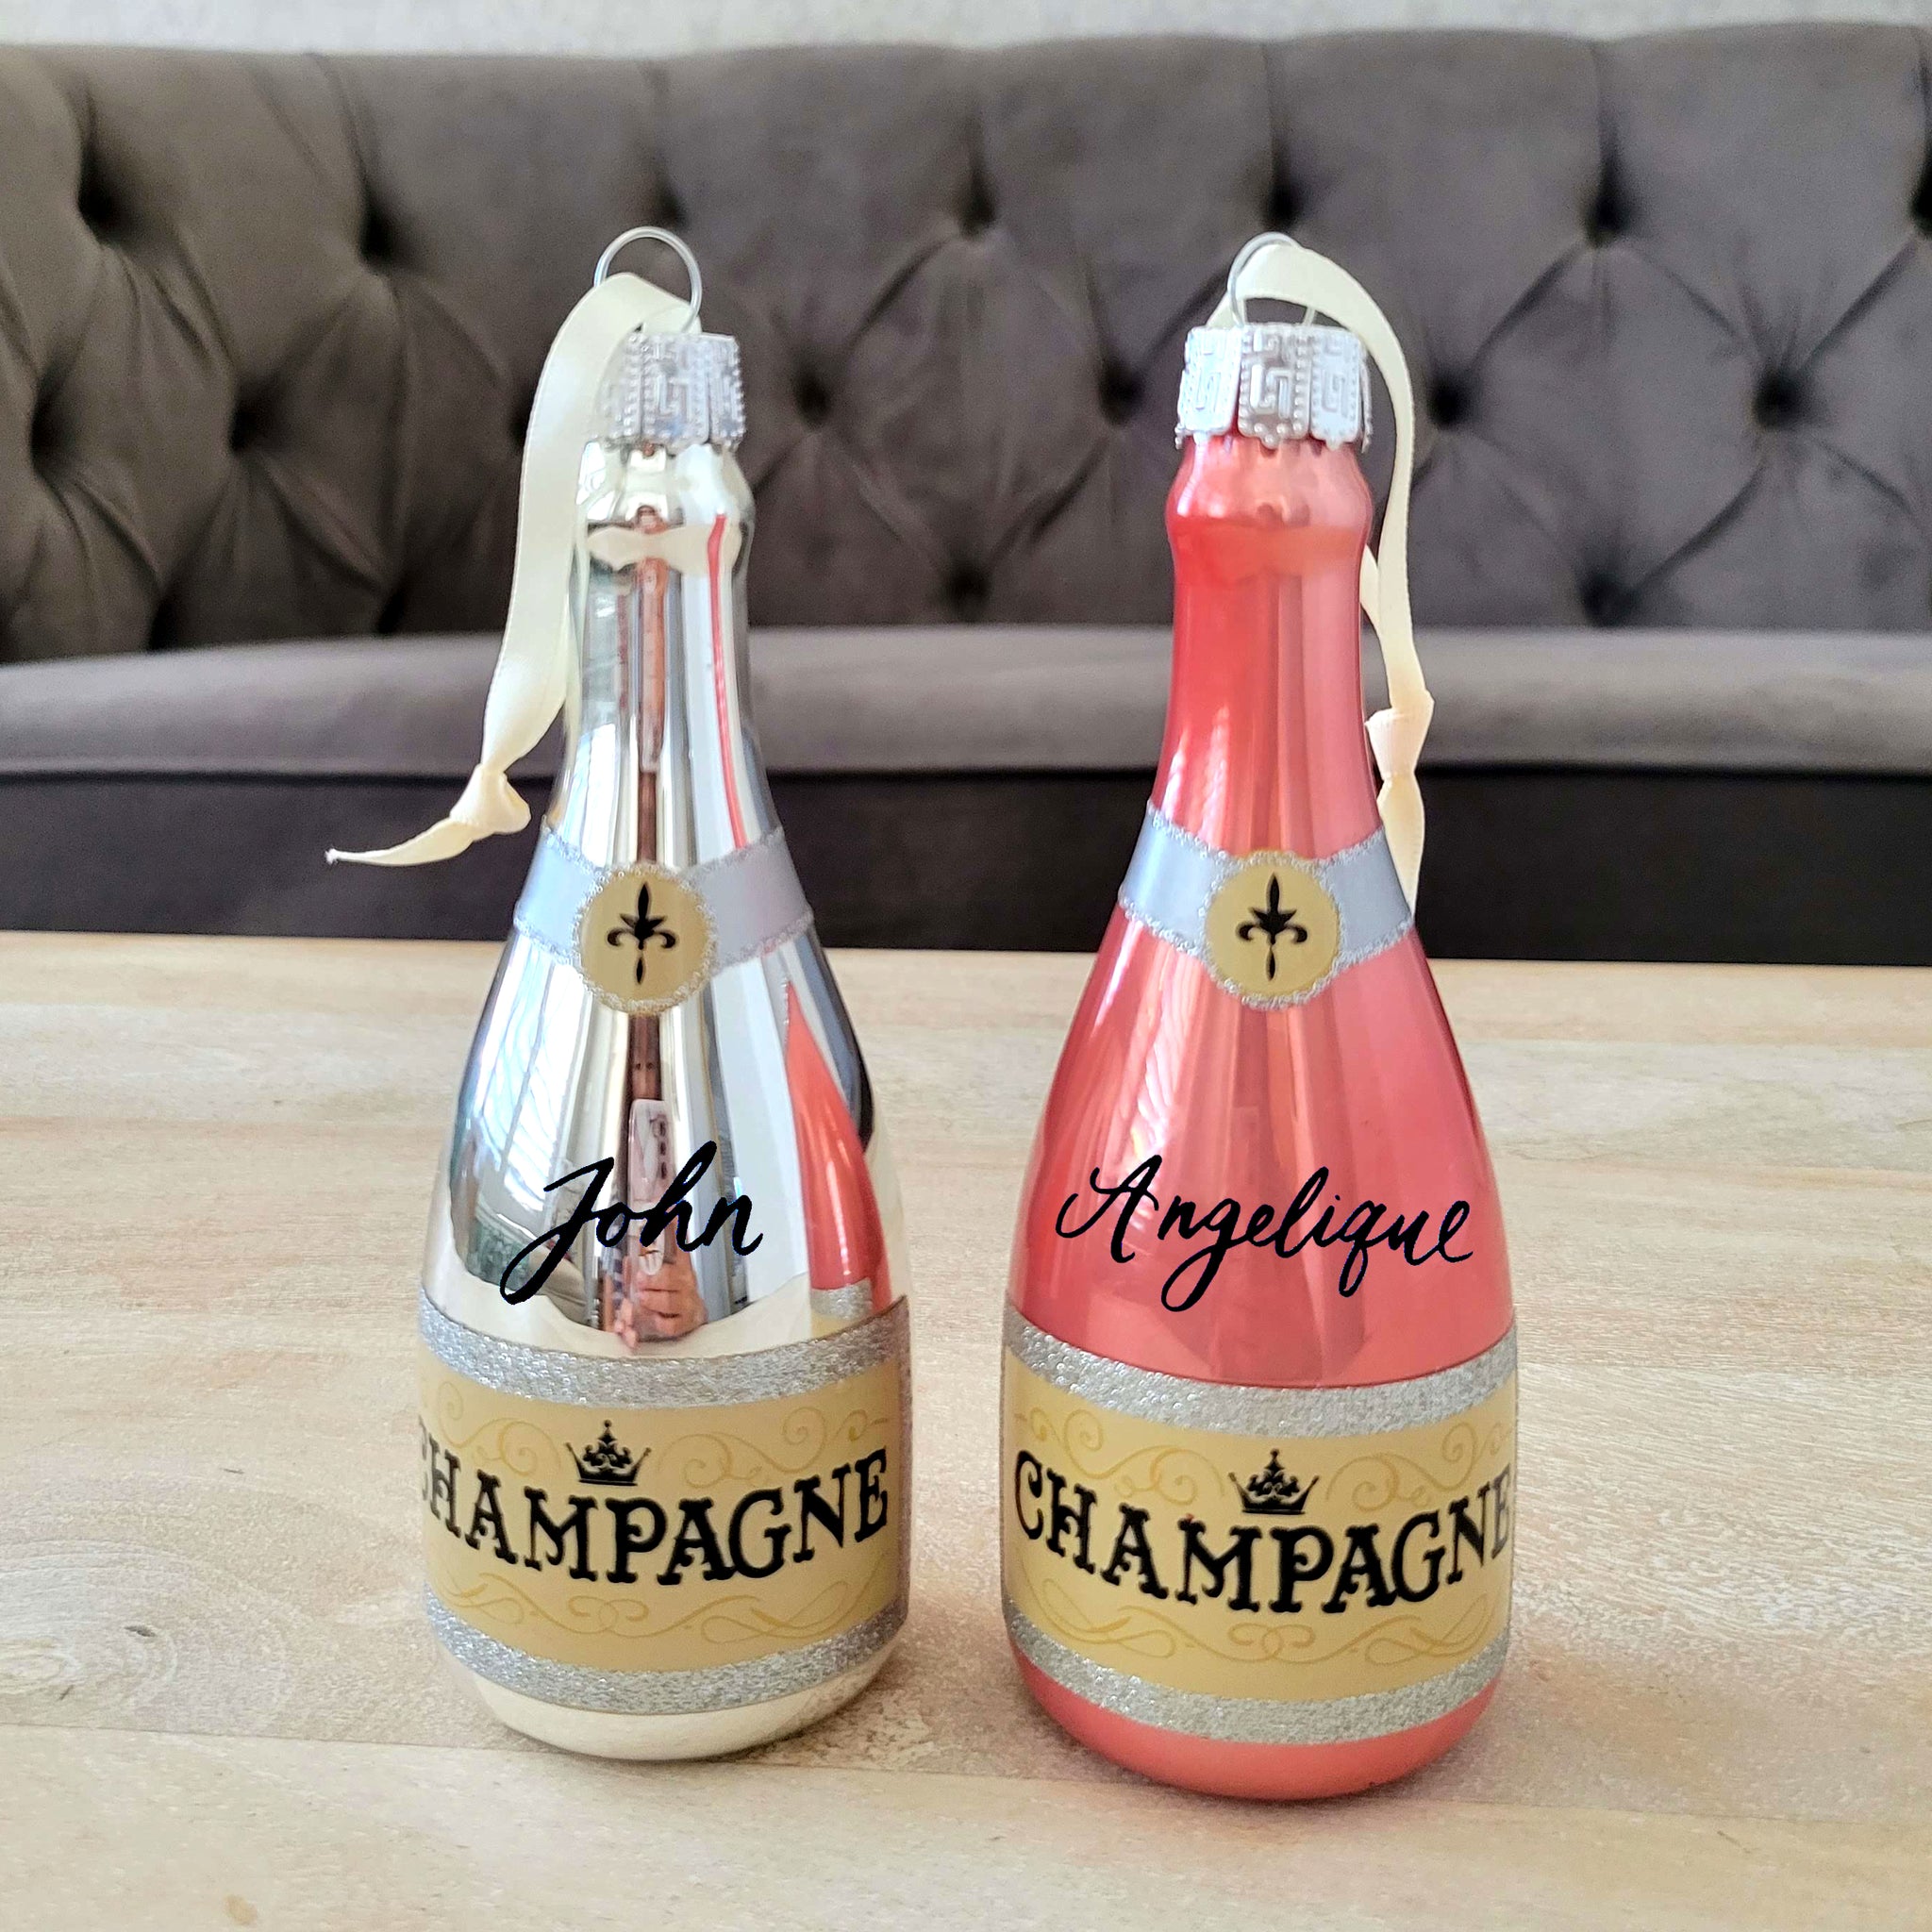 Champagne Ornament